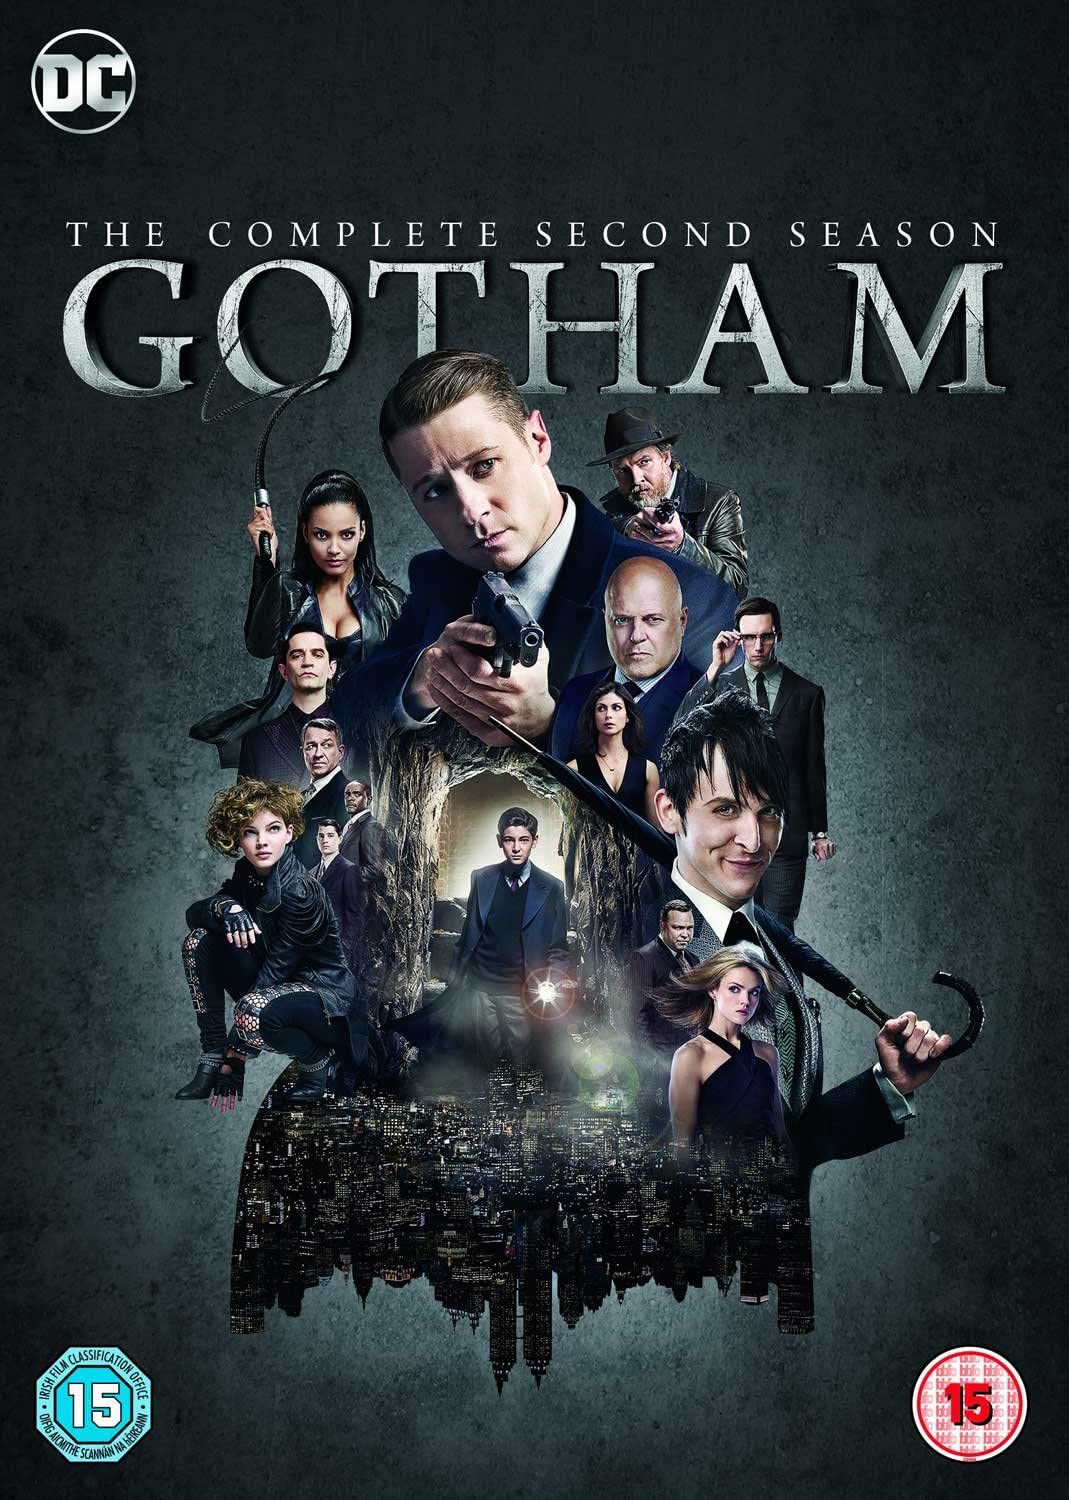 Poster Phim Thành phố tội lỗi (Phần 2) (Gotham (Season 2))